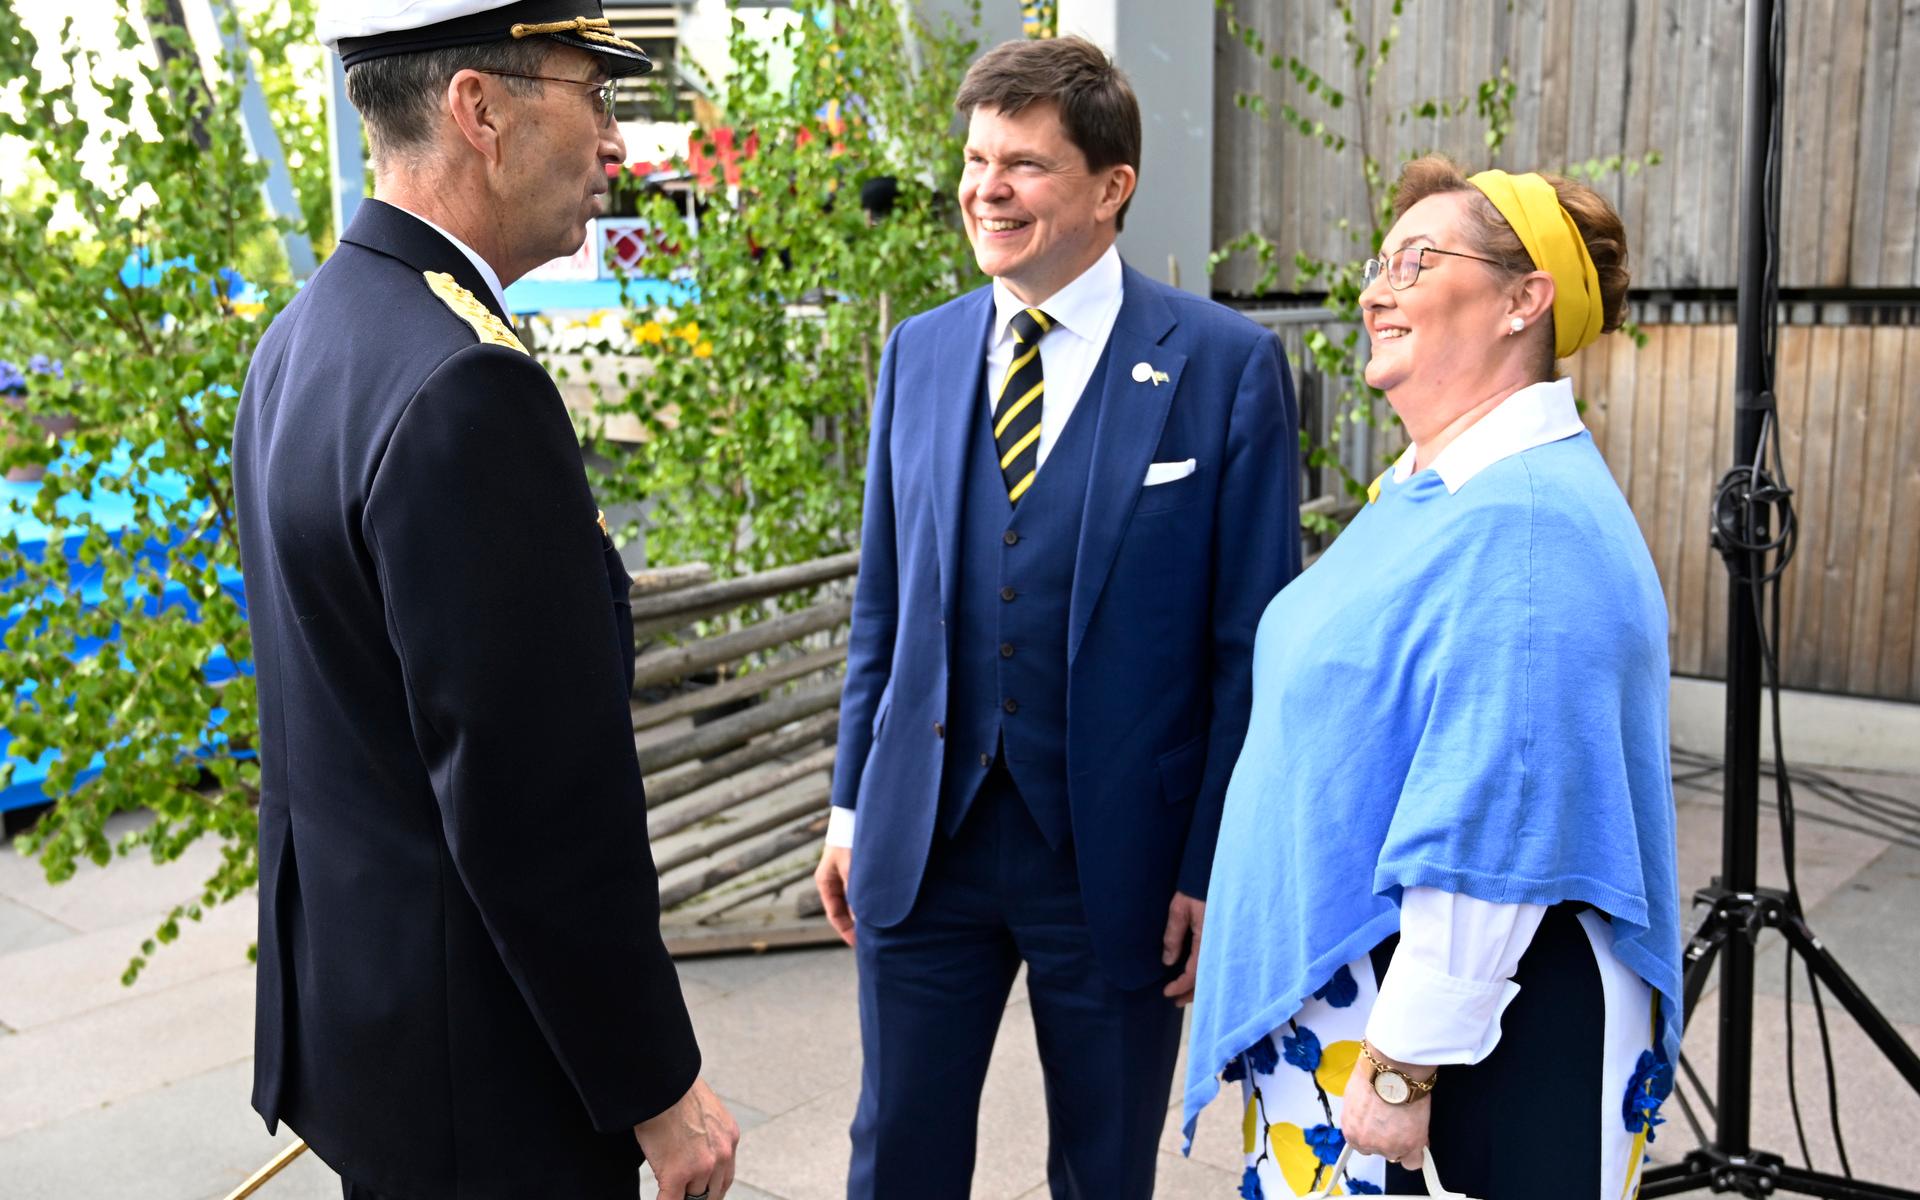 Firandet var kändistätt som vanligt. Här syns överbefälhavare Micael Bydén och talman Andreas Norlén med makan Helena anlända till firandet. 